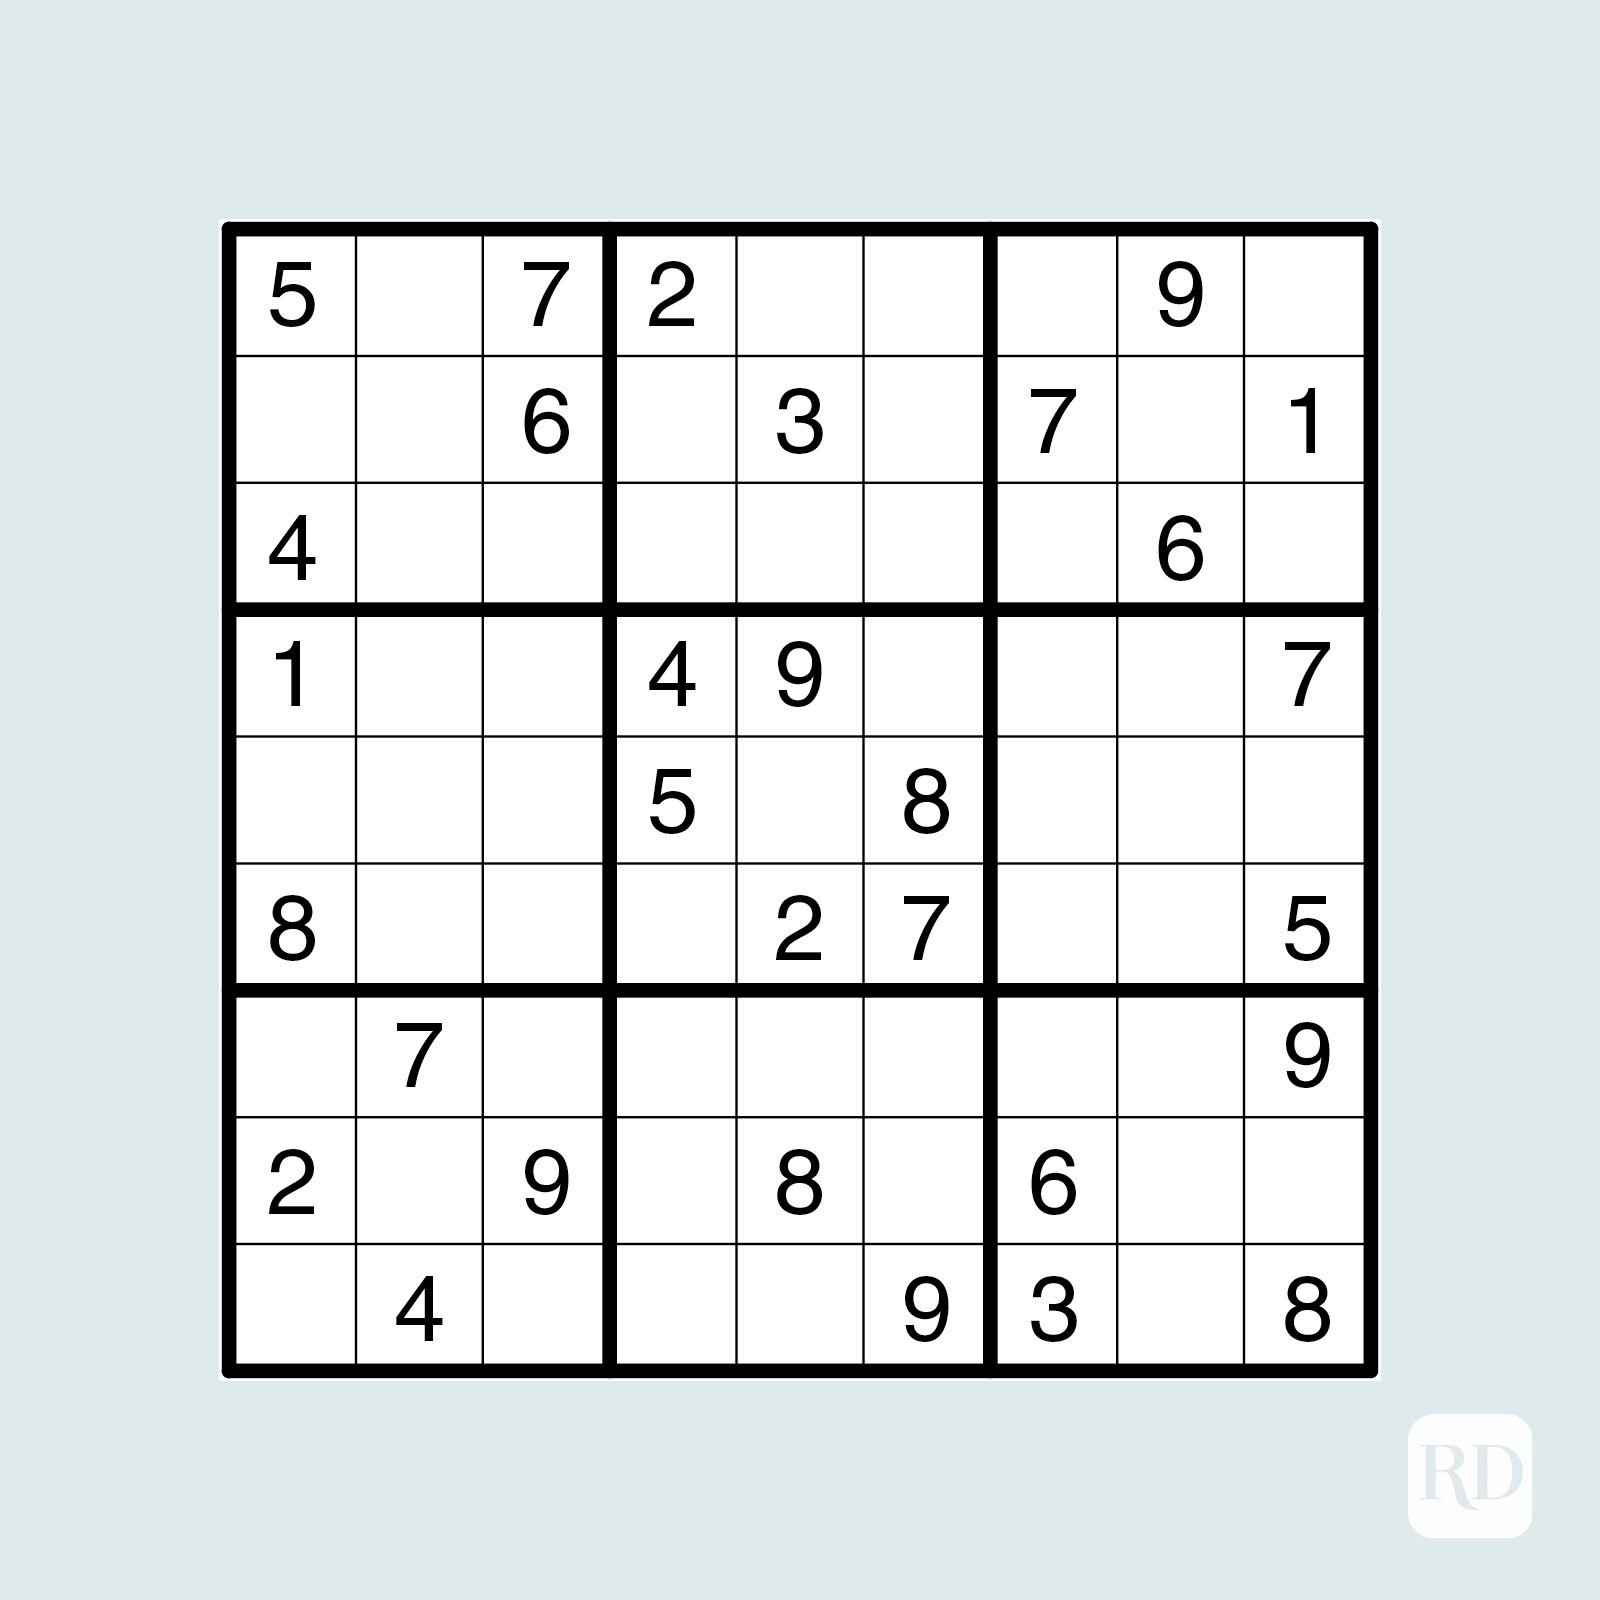 schw-chen-ein-bild-malen-ich-esse-fr-hst-ck-medium-sudoku-puzzles